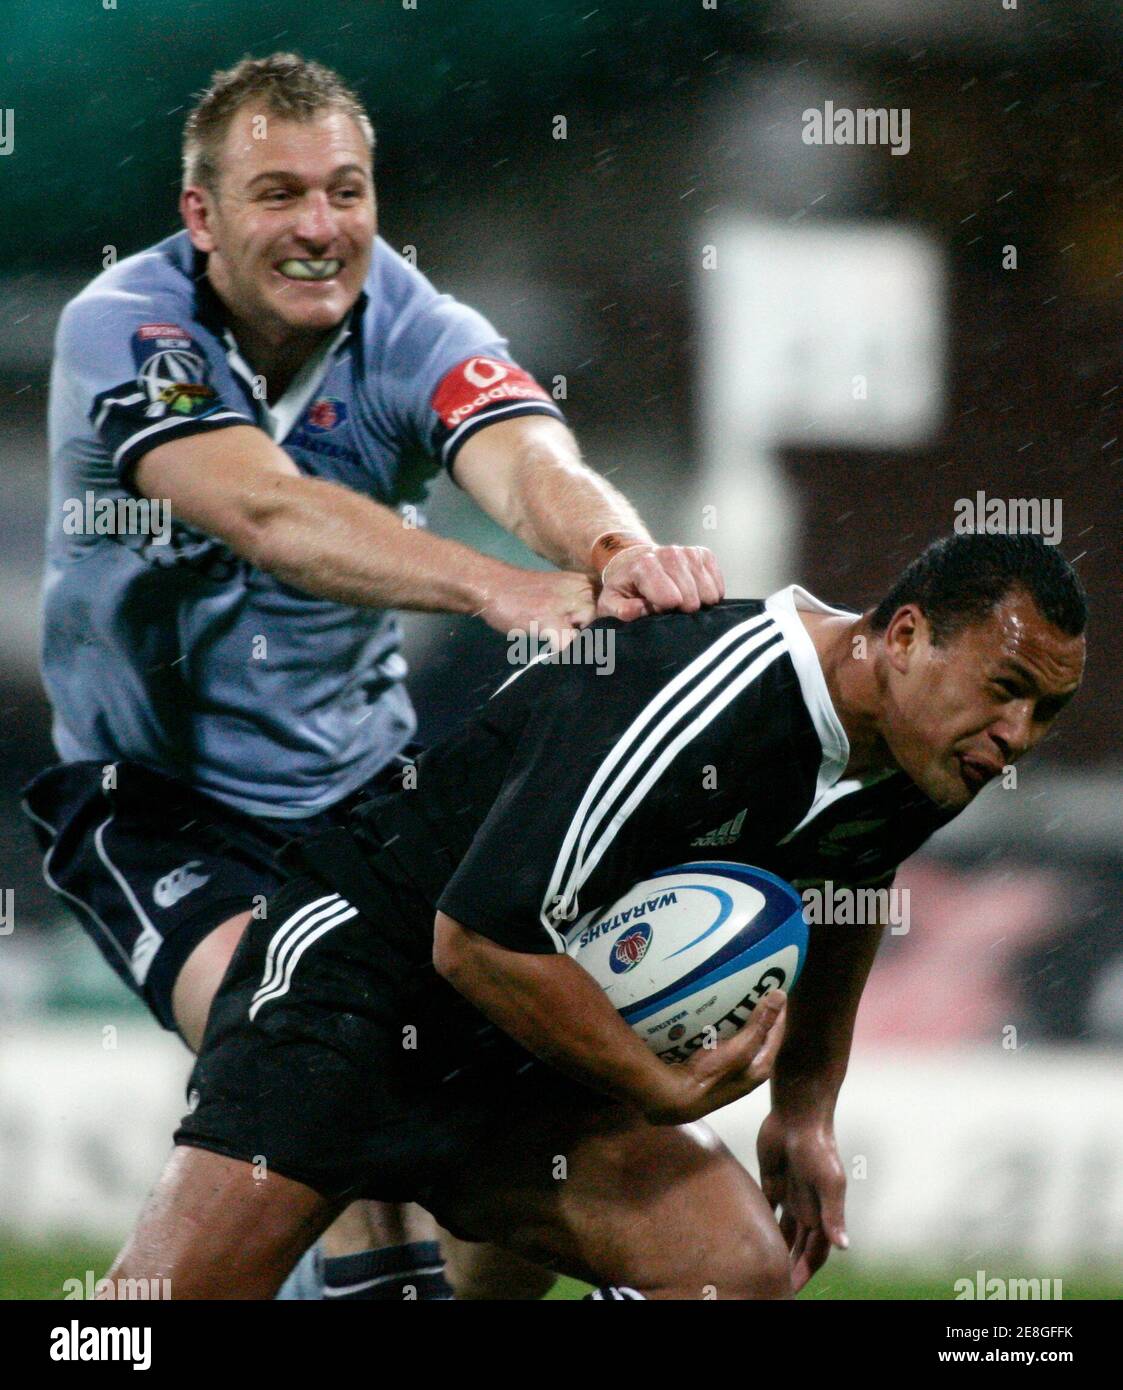 Pehi Te Whare von der New Zealand Maori (R) schlägt der Angriff von Peter Hewat von New South Wales Waratahs während ihres internationalen Rugby-union-Spiels in Sydney 2. Juni 2006. REUTERS / Willen Burgess (Australien) Stockfoto